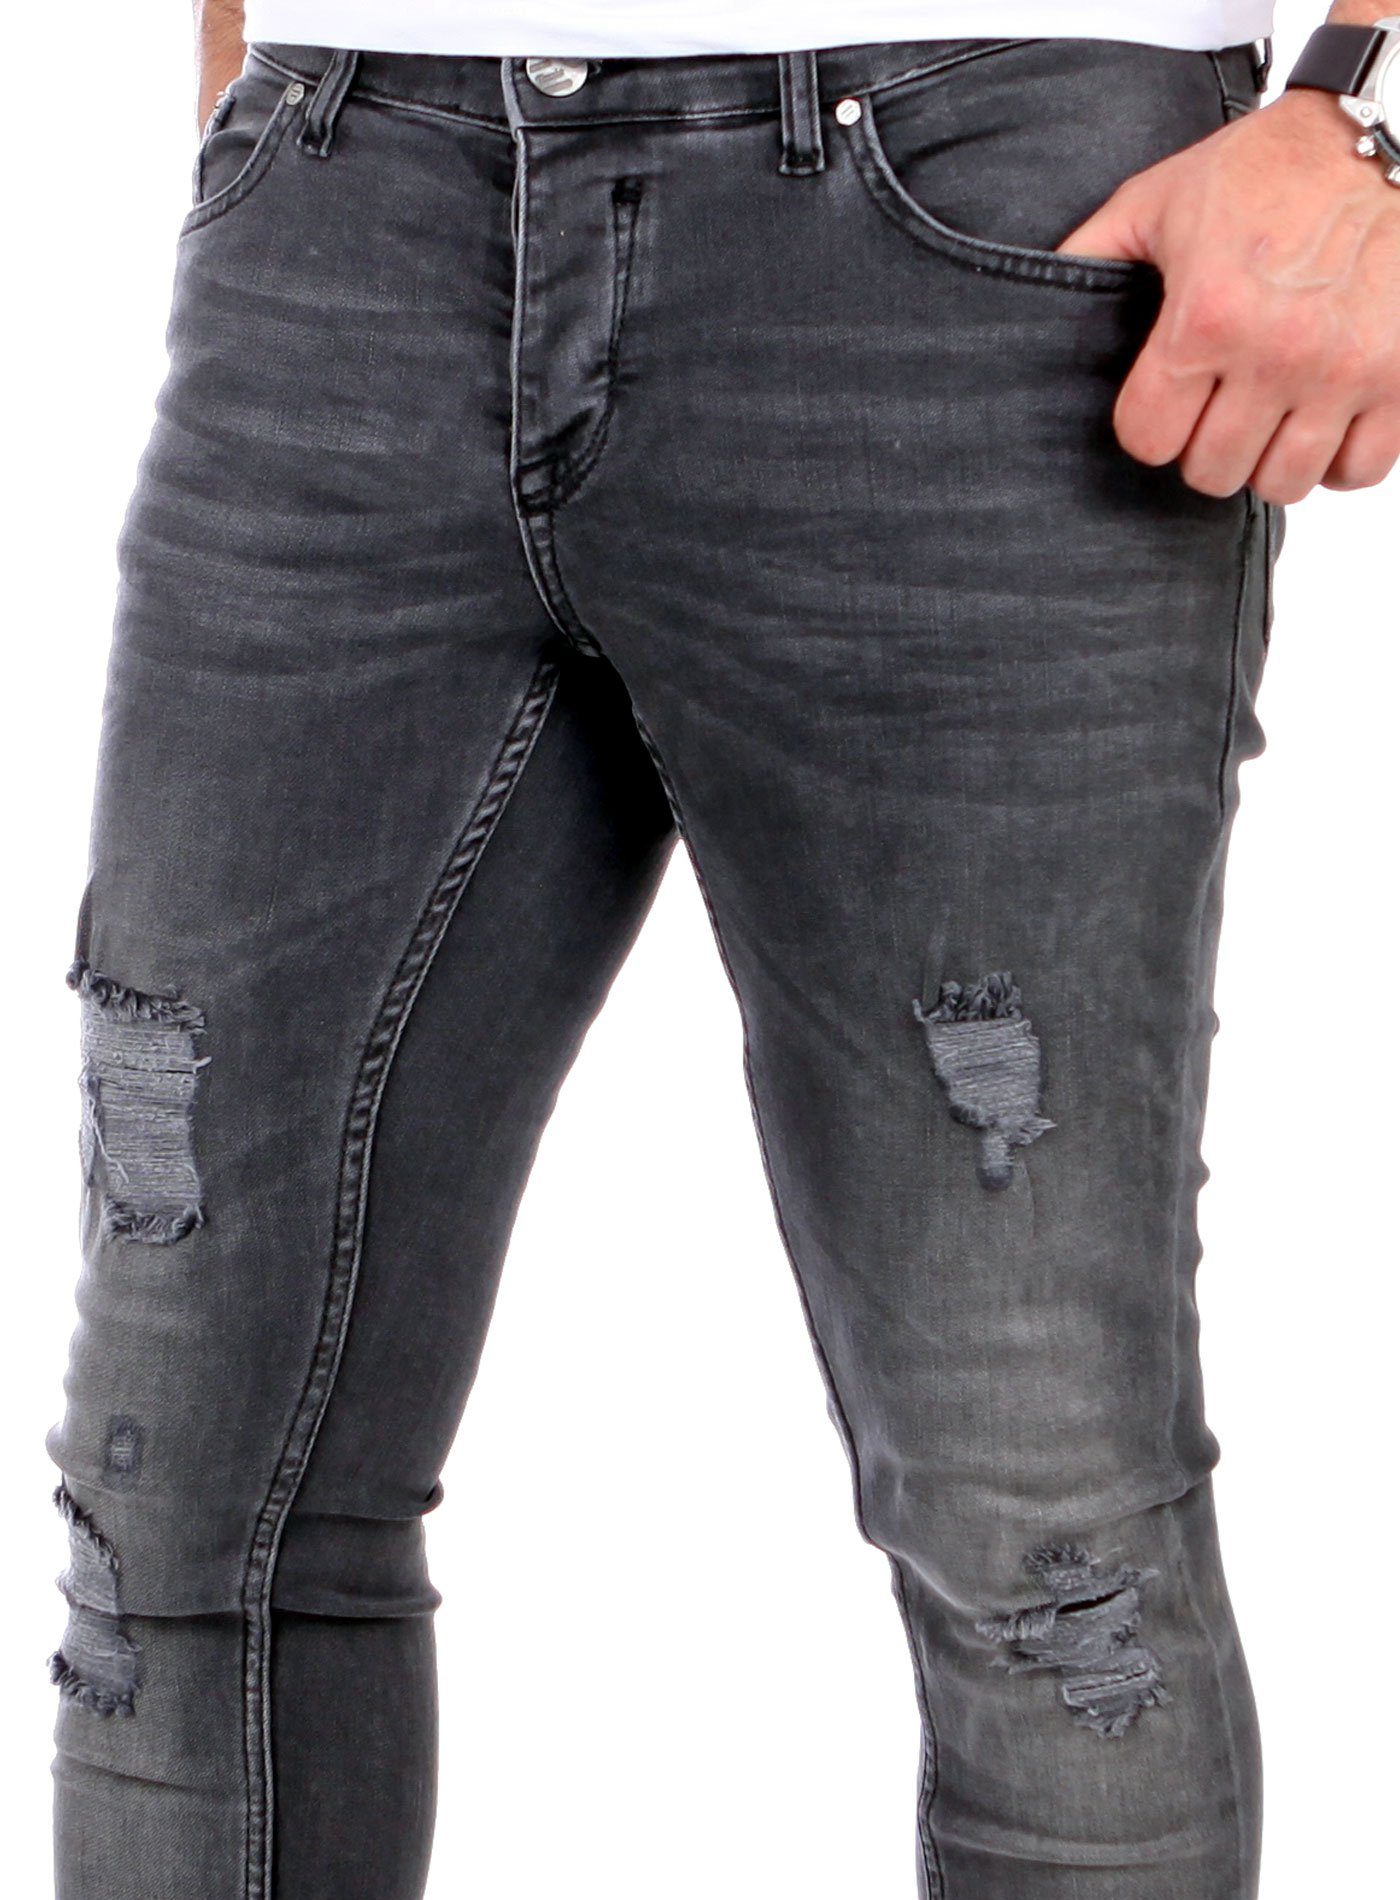 Reslad Slim Destroyed-Jeans Fit Slim Jeans-Hose Destroyed Jeans Look Herren Reslad Denim Stretch schwarz Look Fit Jeans Destroyed